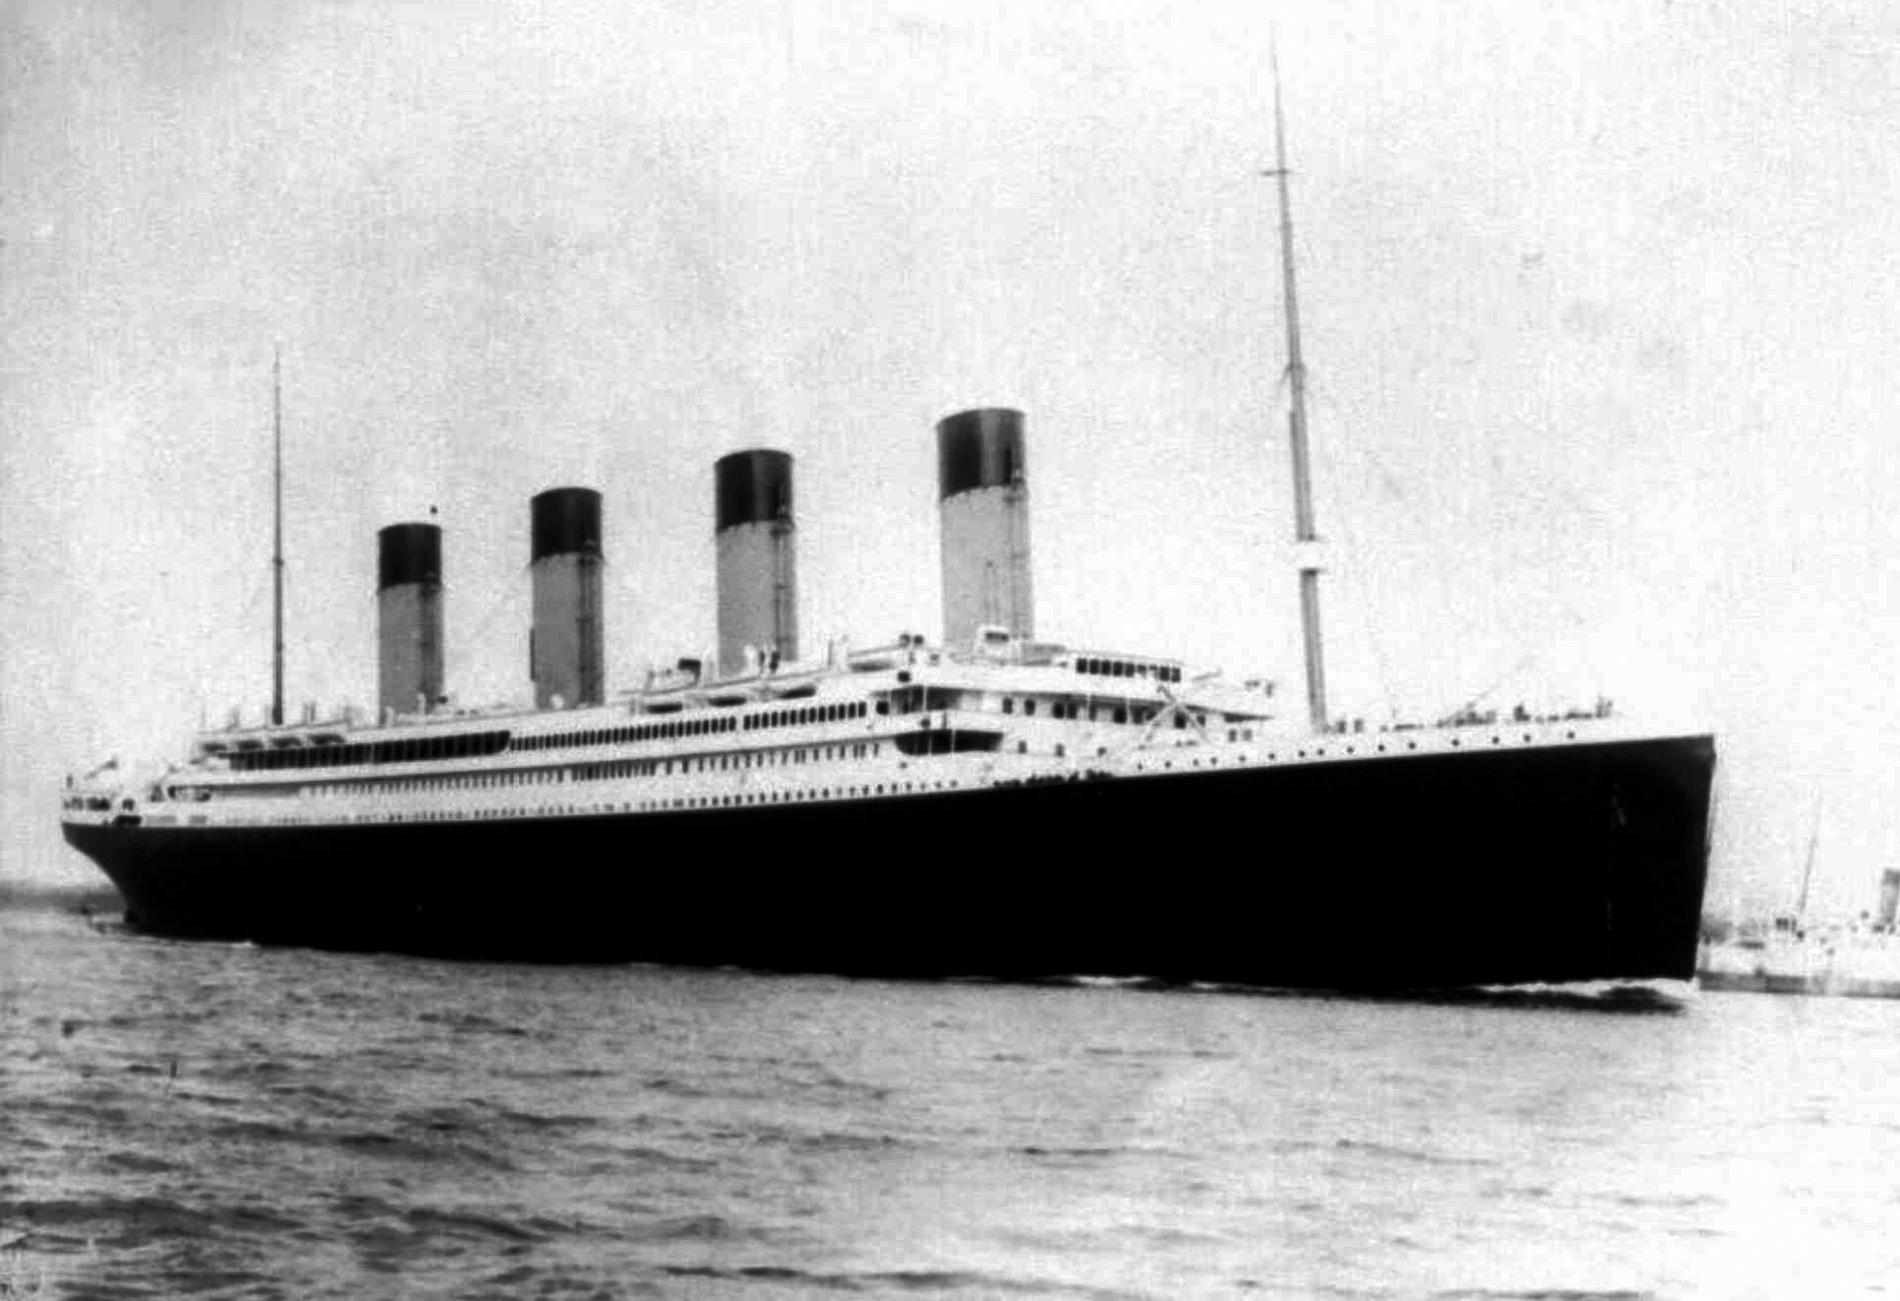 NY RESA MED TITANIC En exakt kopia av katastroffartyget Titanic byggs av australiske miljardären Clive Palmer. Om fyra år räknar han med att Titanic II ska vara redo för jungfrufärden – som ska ta samma rutt som sin föregångare. Titanic sjönk 1912 efter fem dagar på sin jungfrufärd.